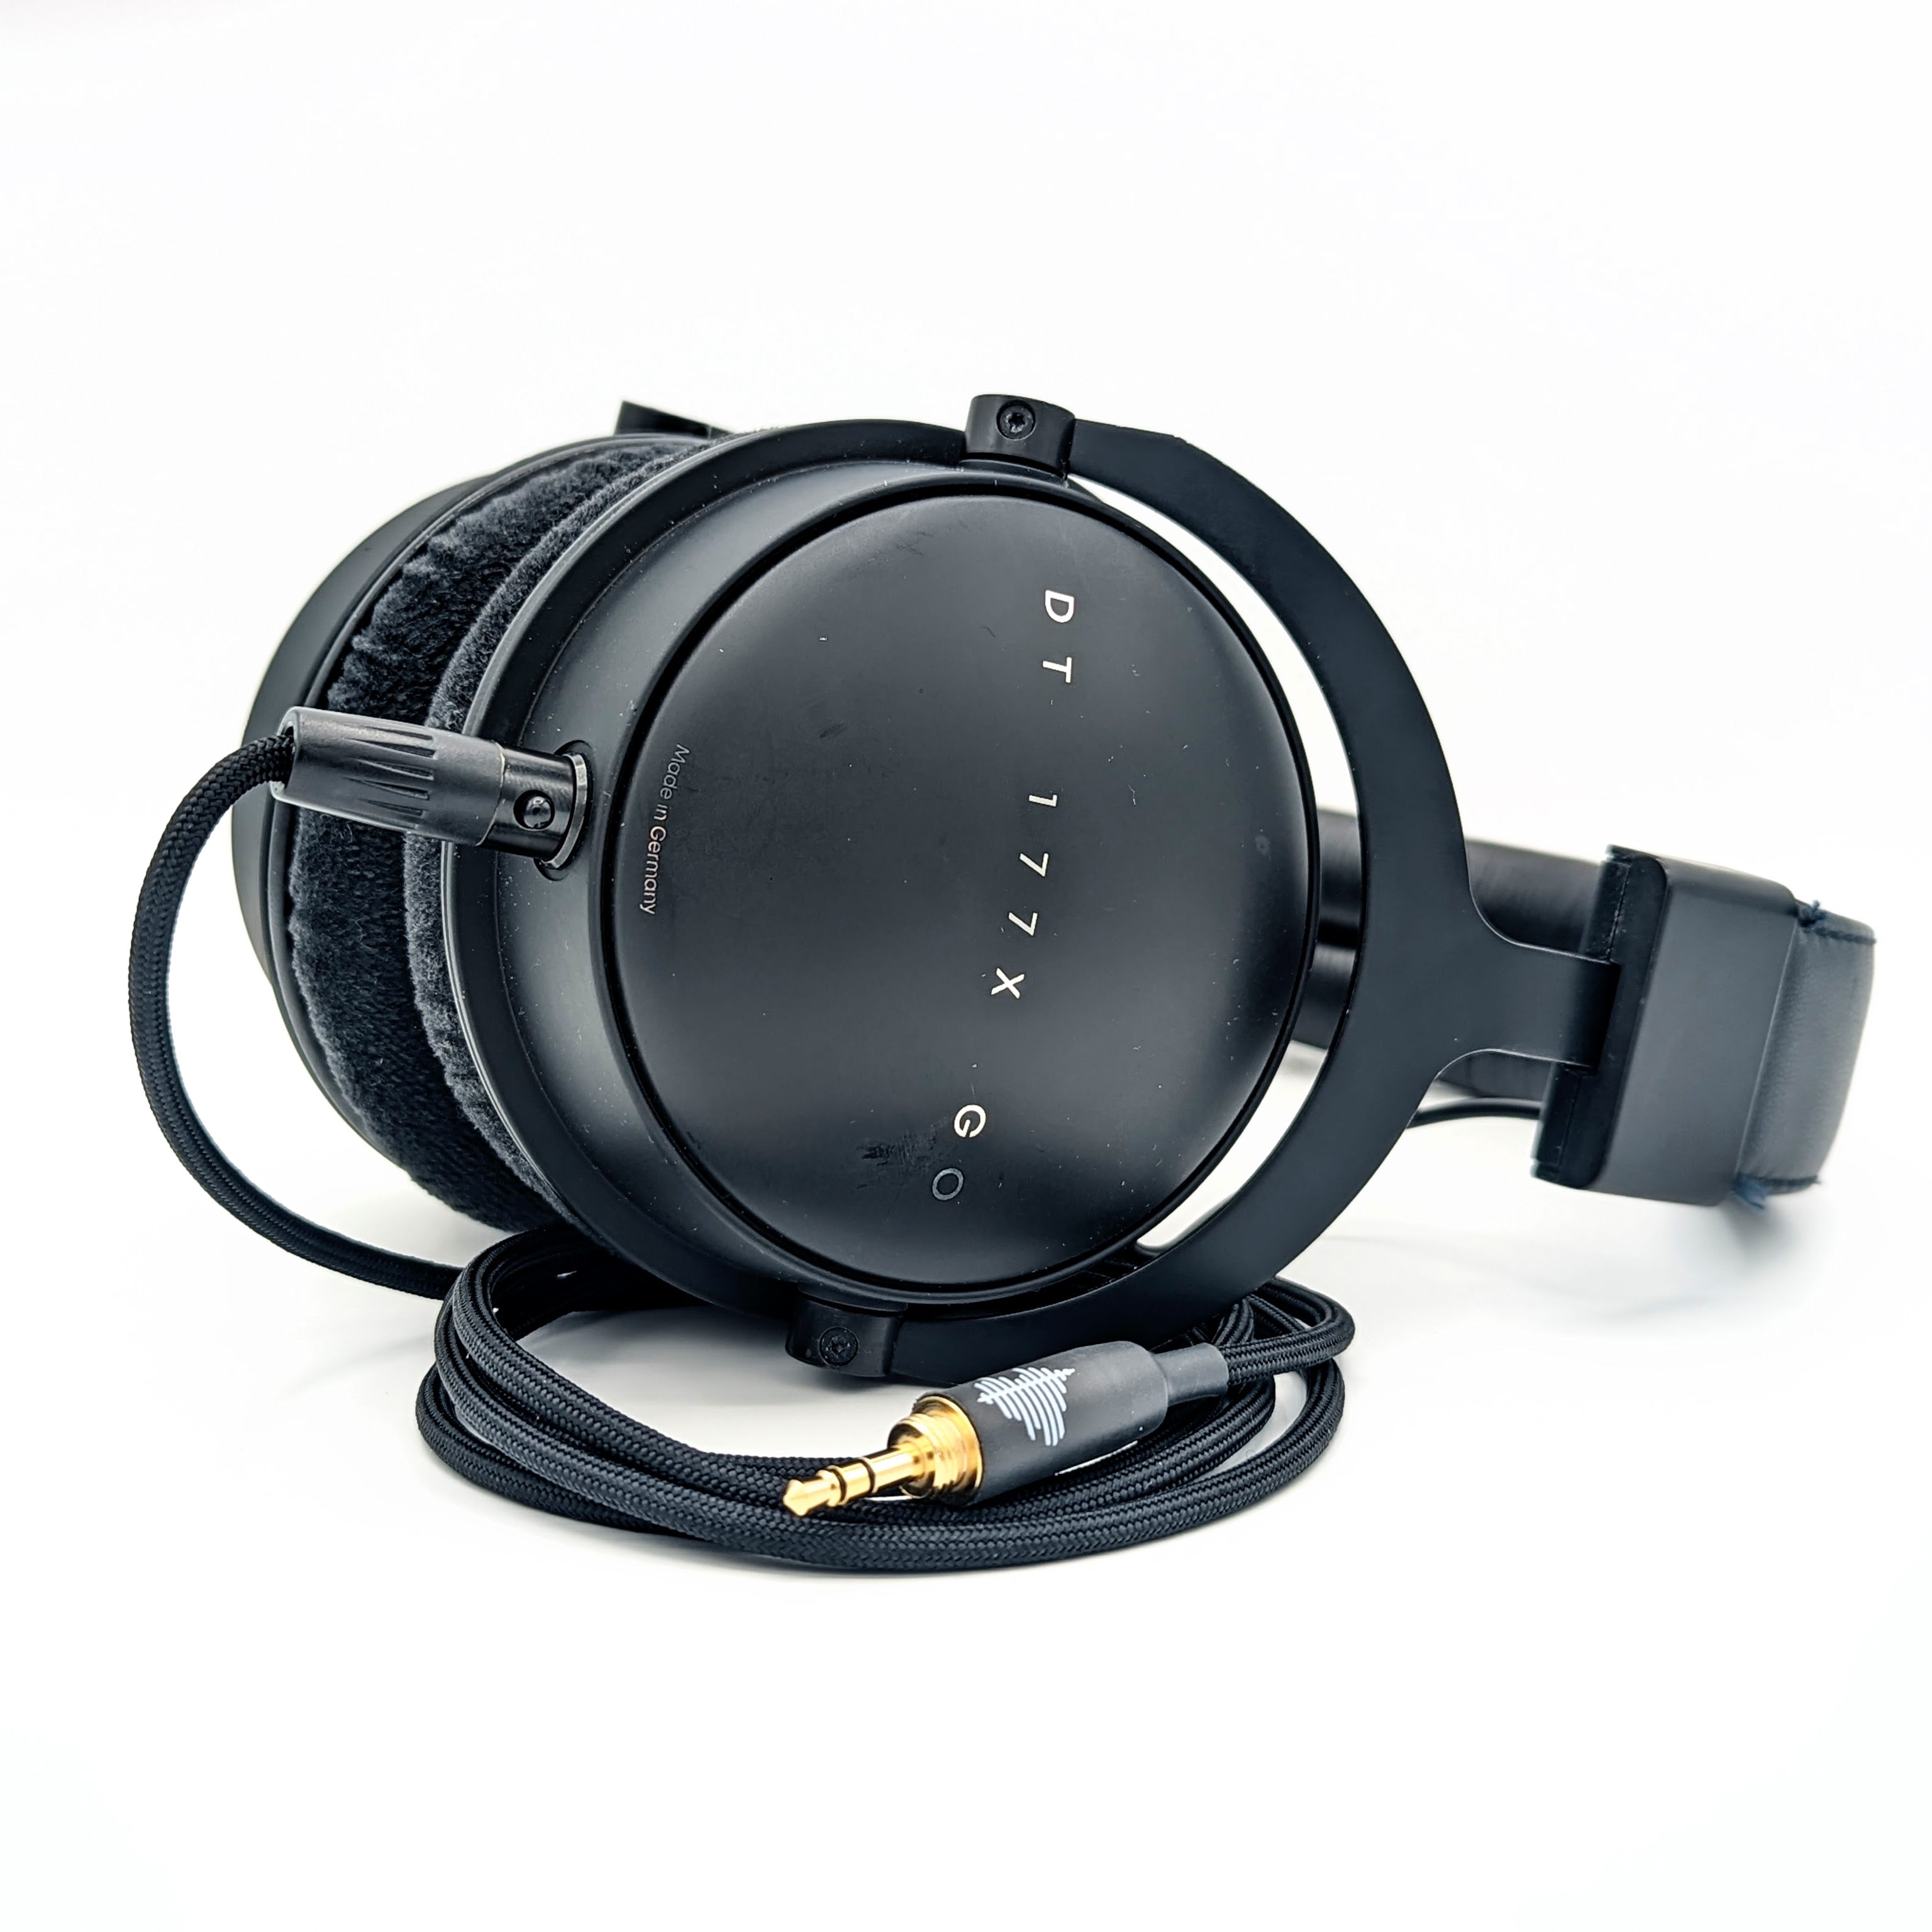 Custom 4-pin mini-XLR cable for DT177X Go Headphones